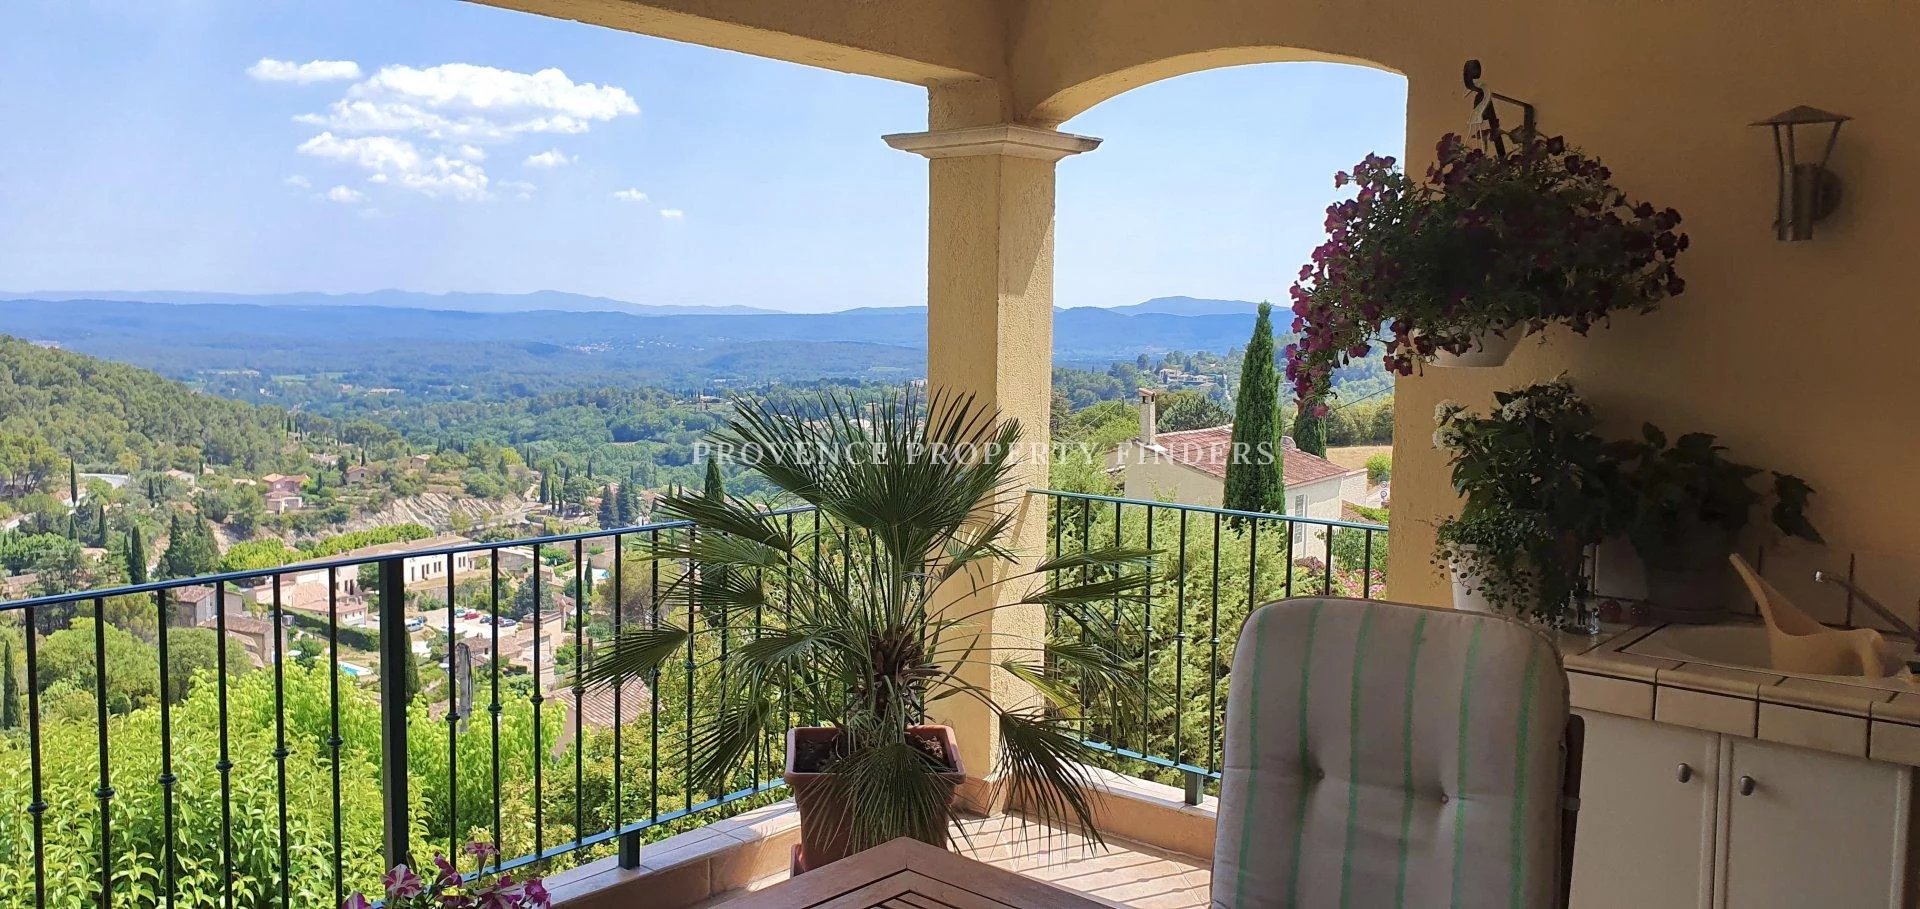 Prachtige Villa in Cotignac, mooi uitzicht en niet ver van het centrum gelegen.